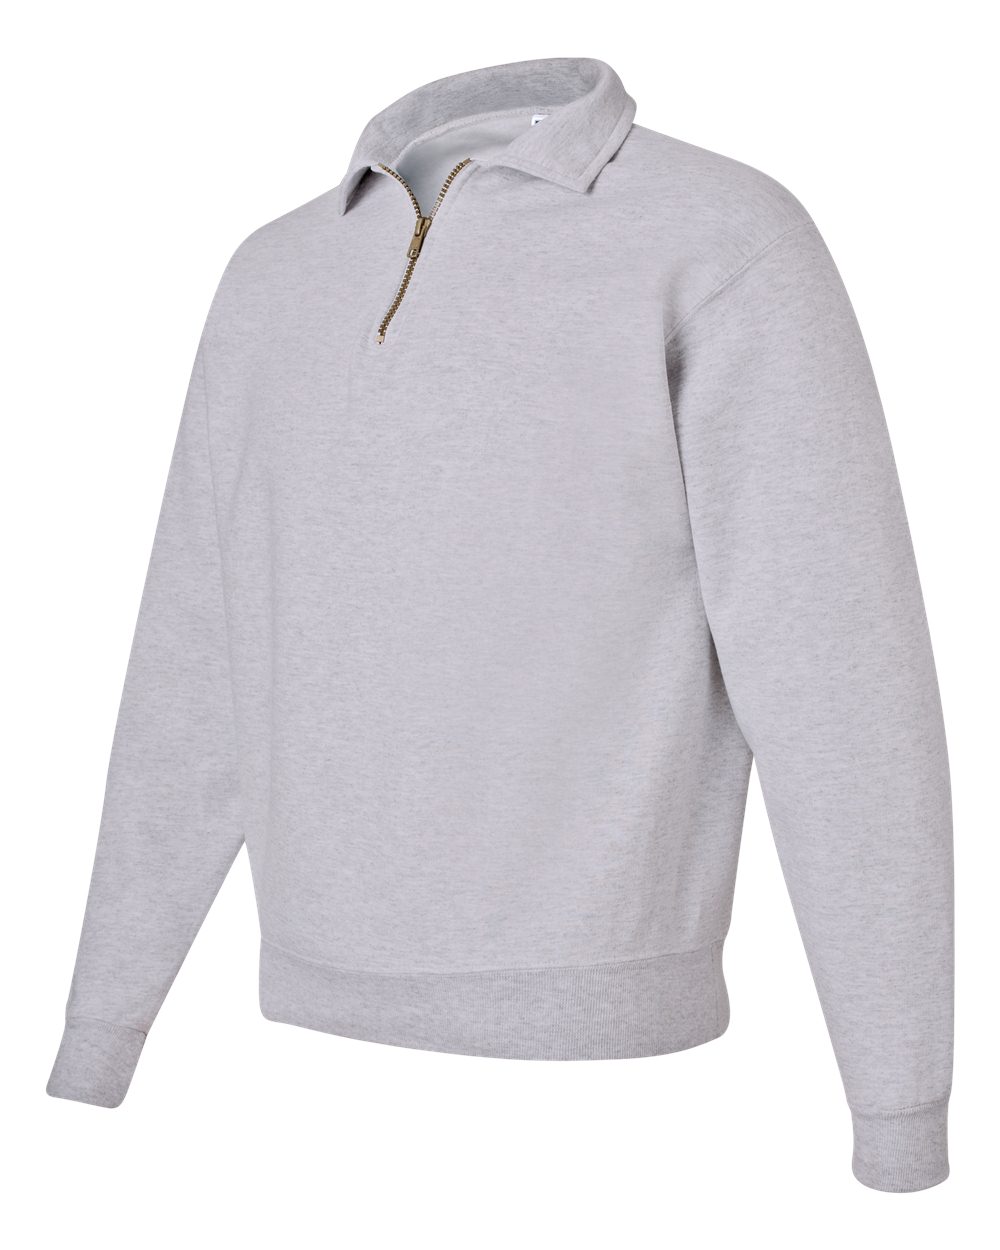 JERZEES 4528MR - NuBlend SUPER SWEATS Quarter-Zip Pullover Sweatshirt